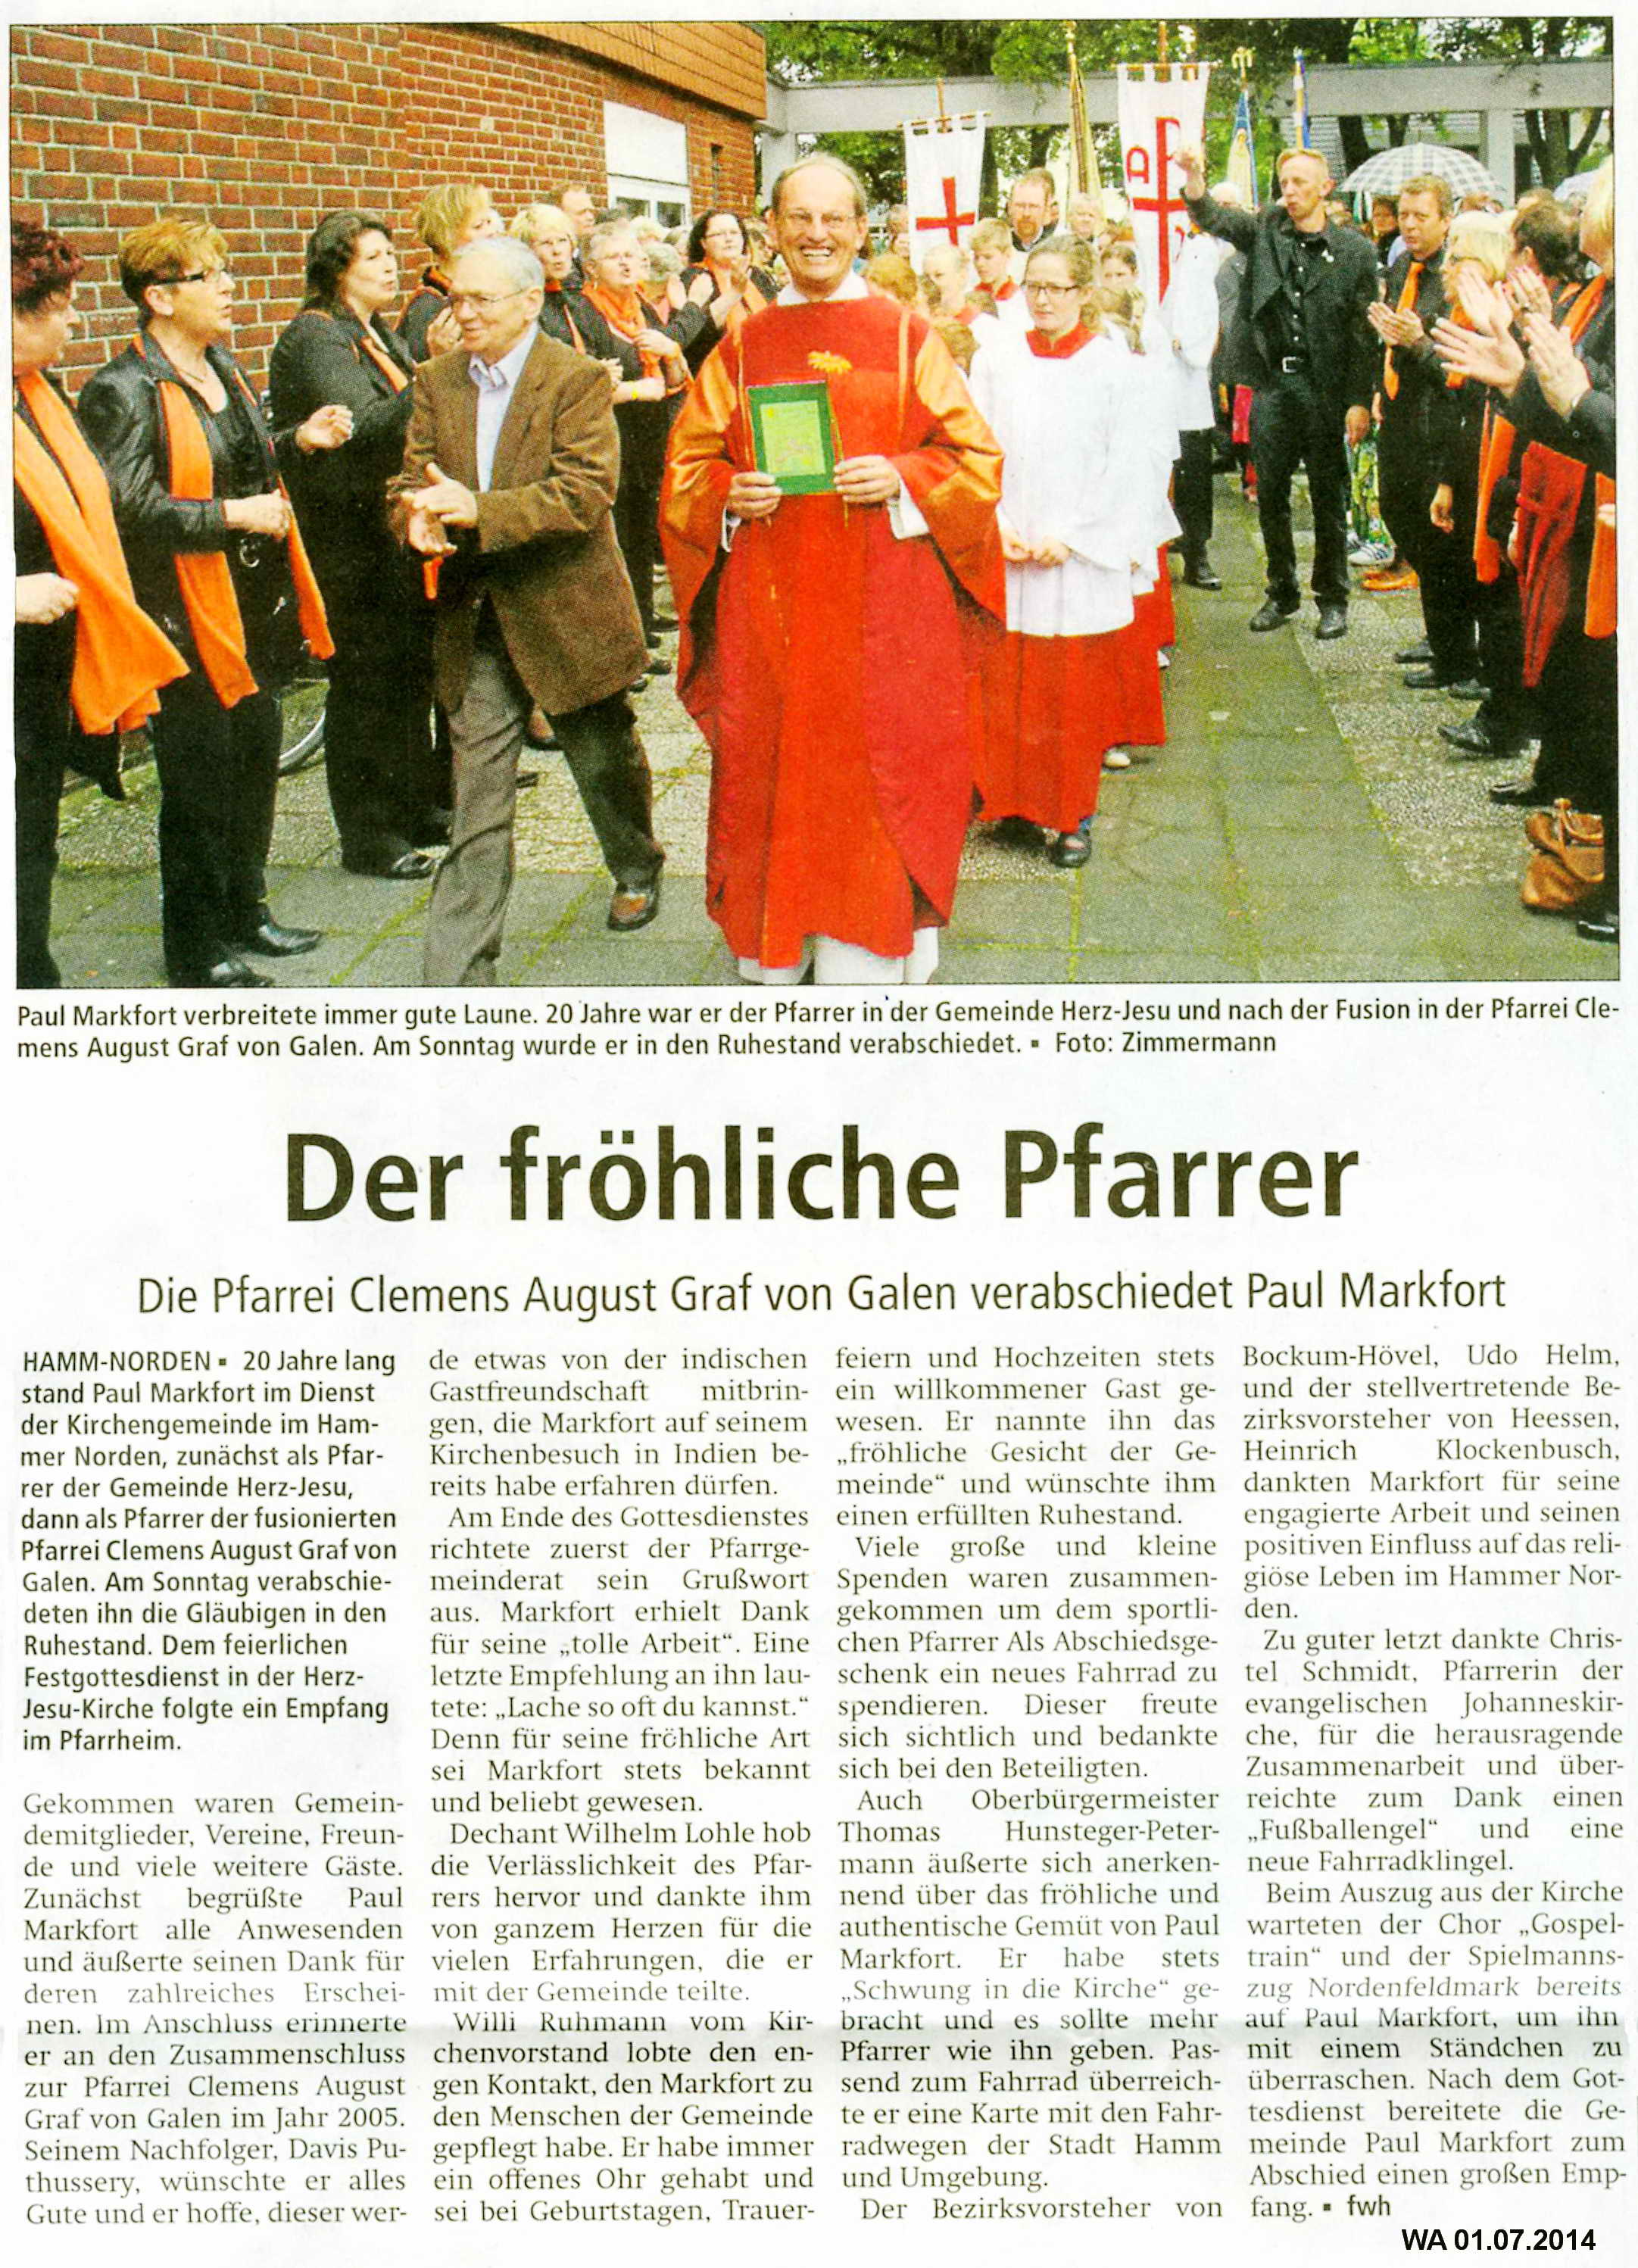 © Westfälischer Anzeiger, Hamm, 01.07.2014